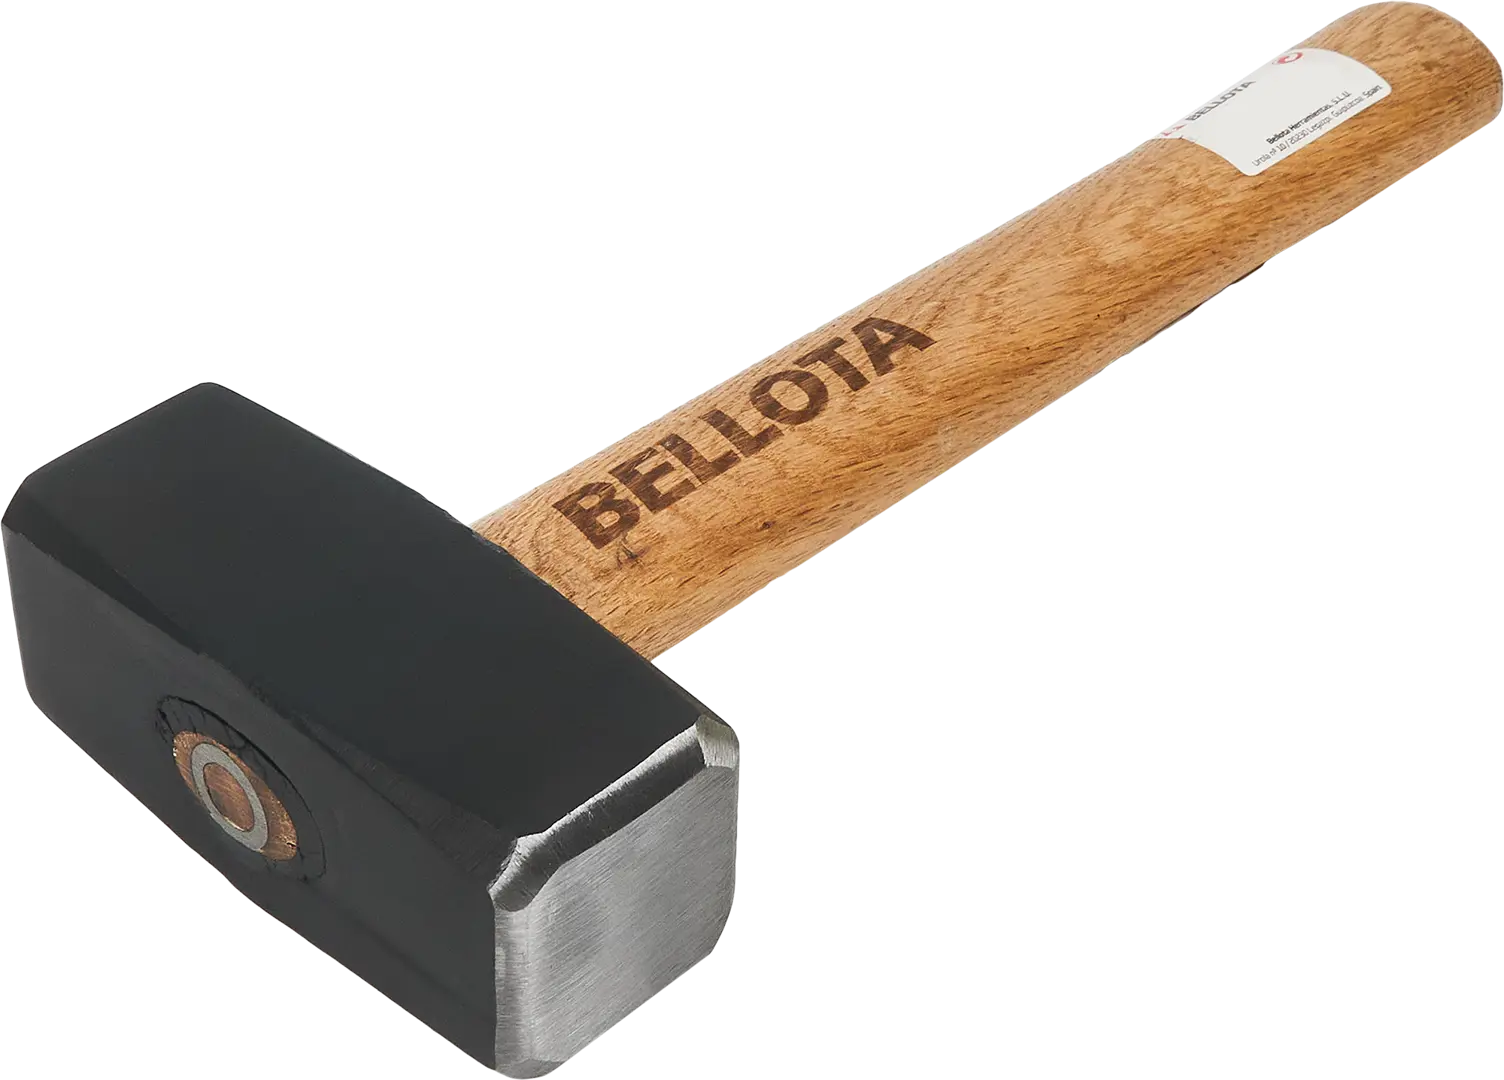 Кувалда Bellota 25310-E деревянная рукоятка 2000 г кувалда bellota 25310 e деревянная рукоятка 2000 г